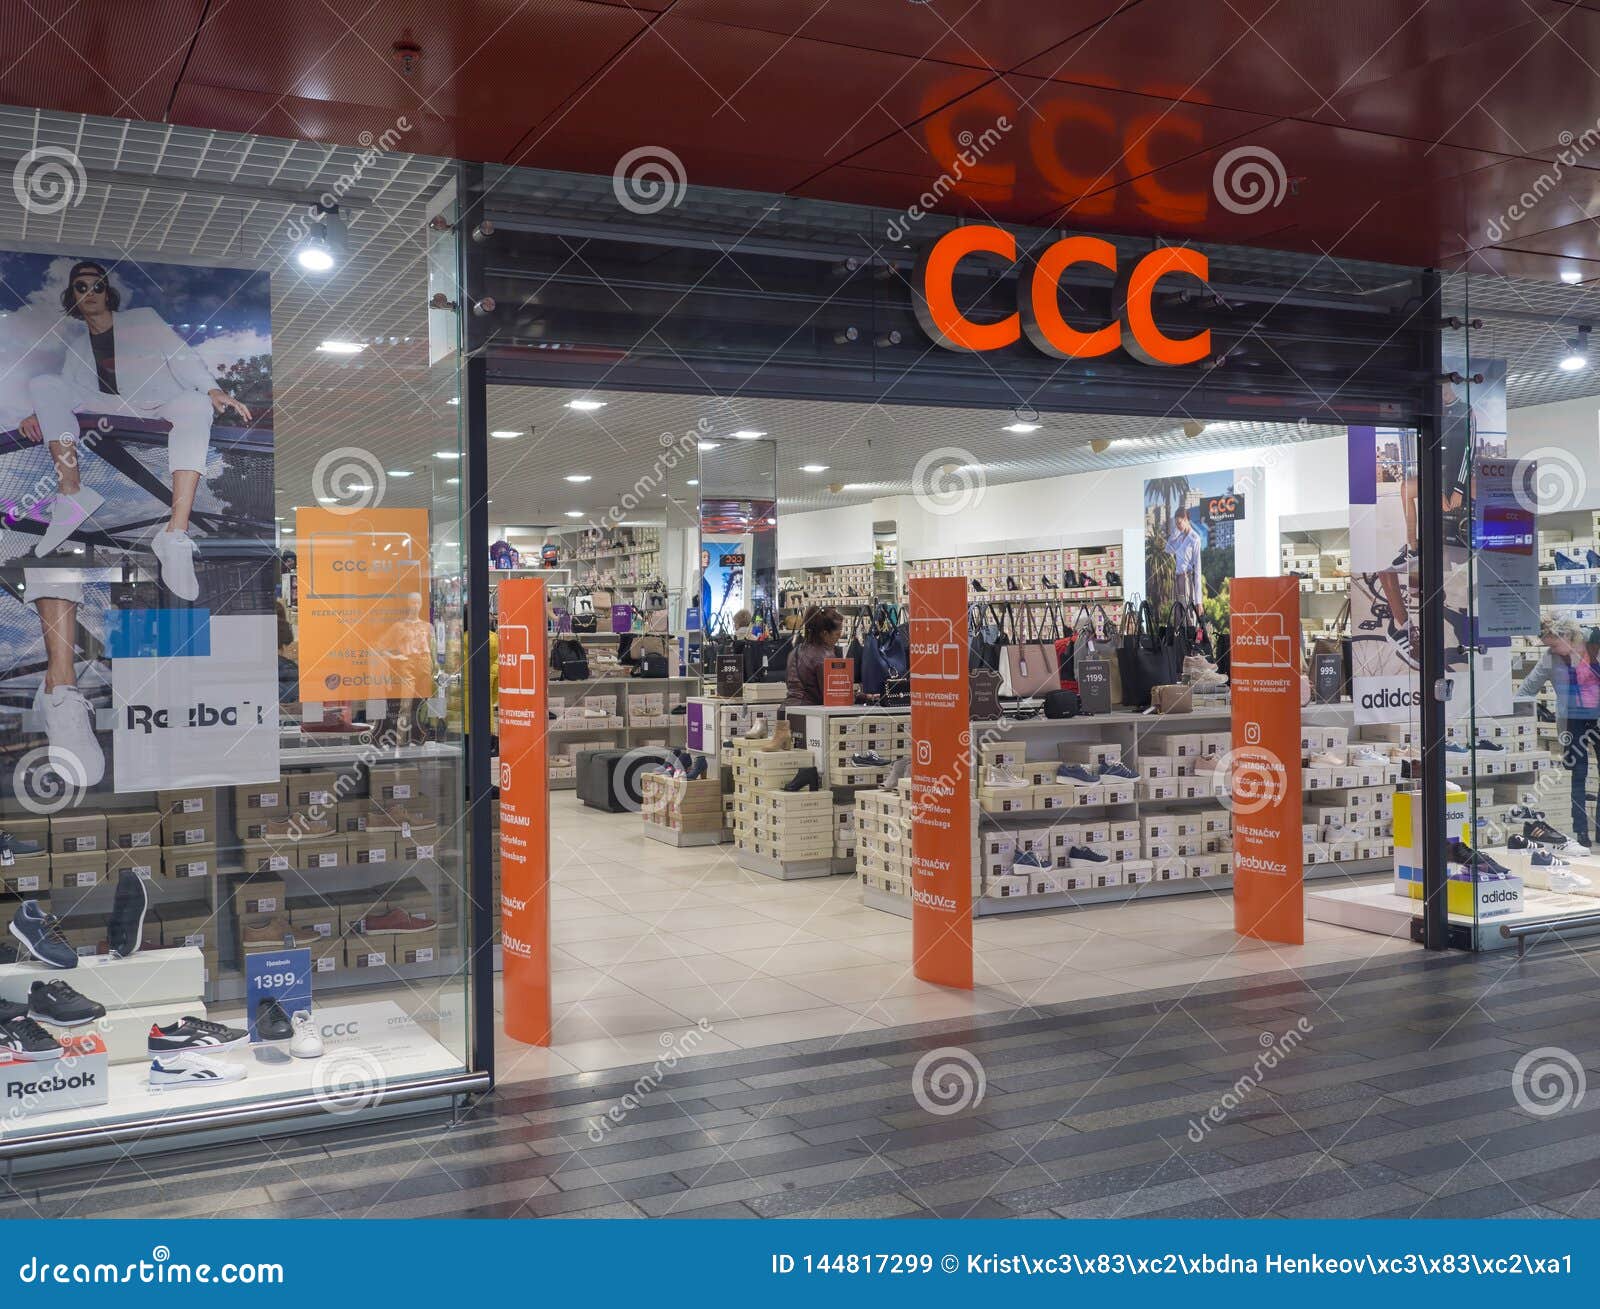 ccc shoes shop